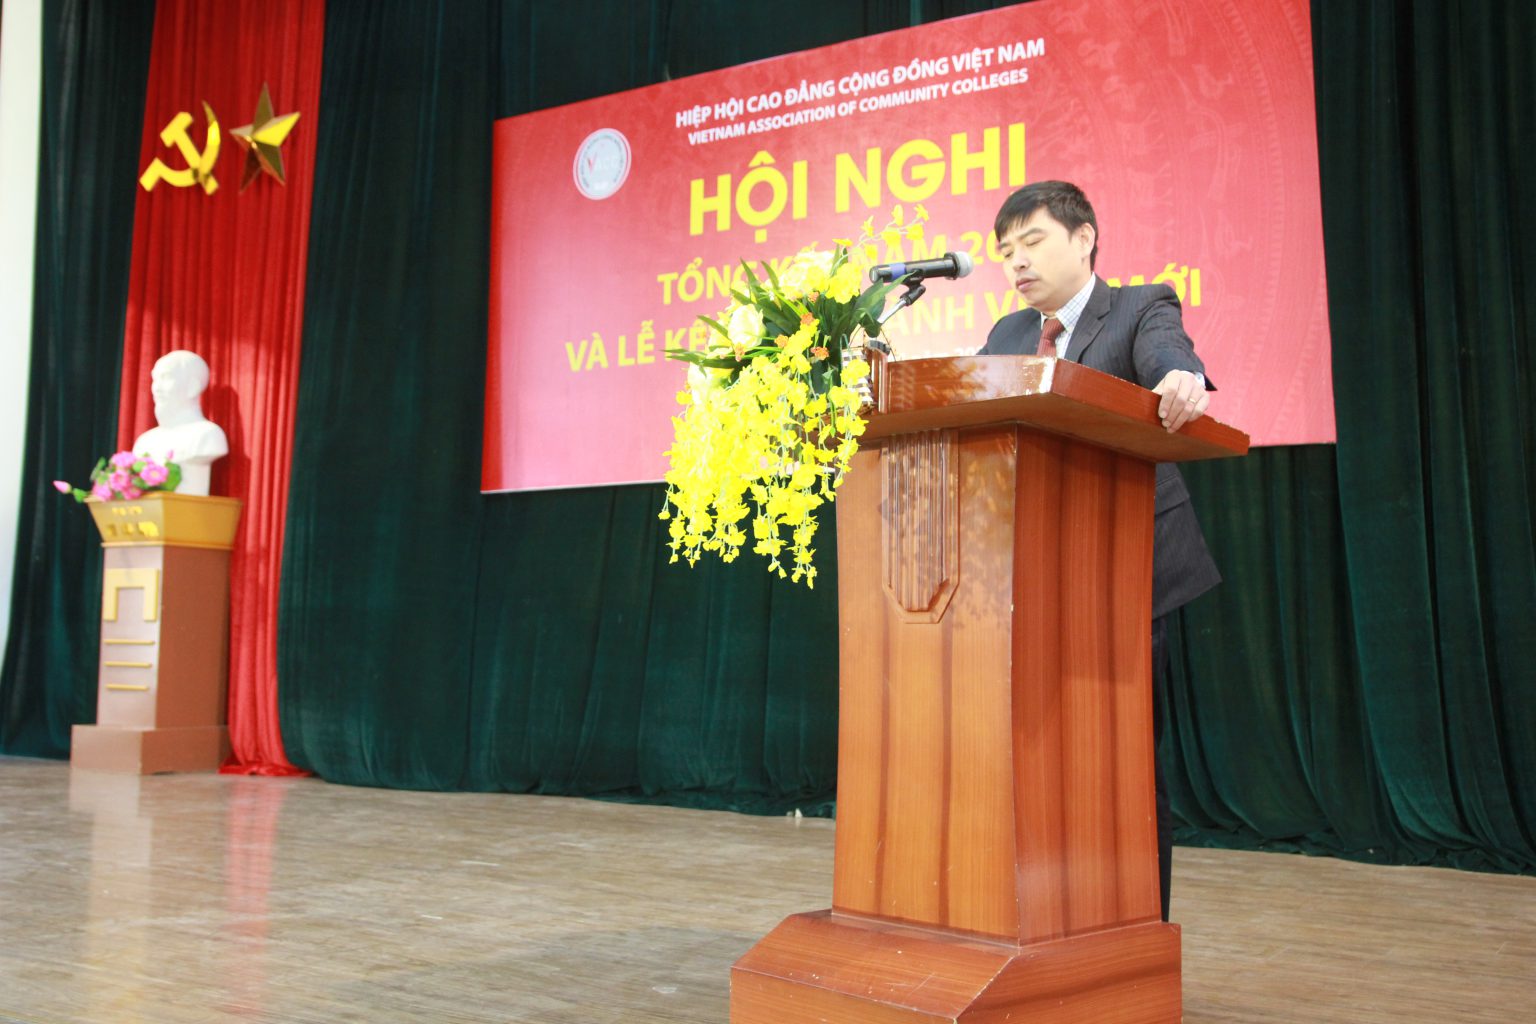 Hội nghị tổng kết năm 2020 của Hiệp hội Cao đẳng Cộng đồng Việt Nam